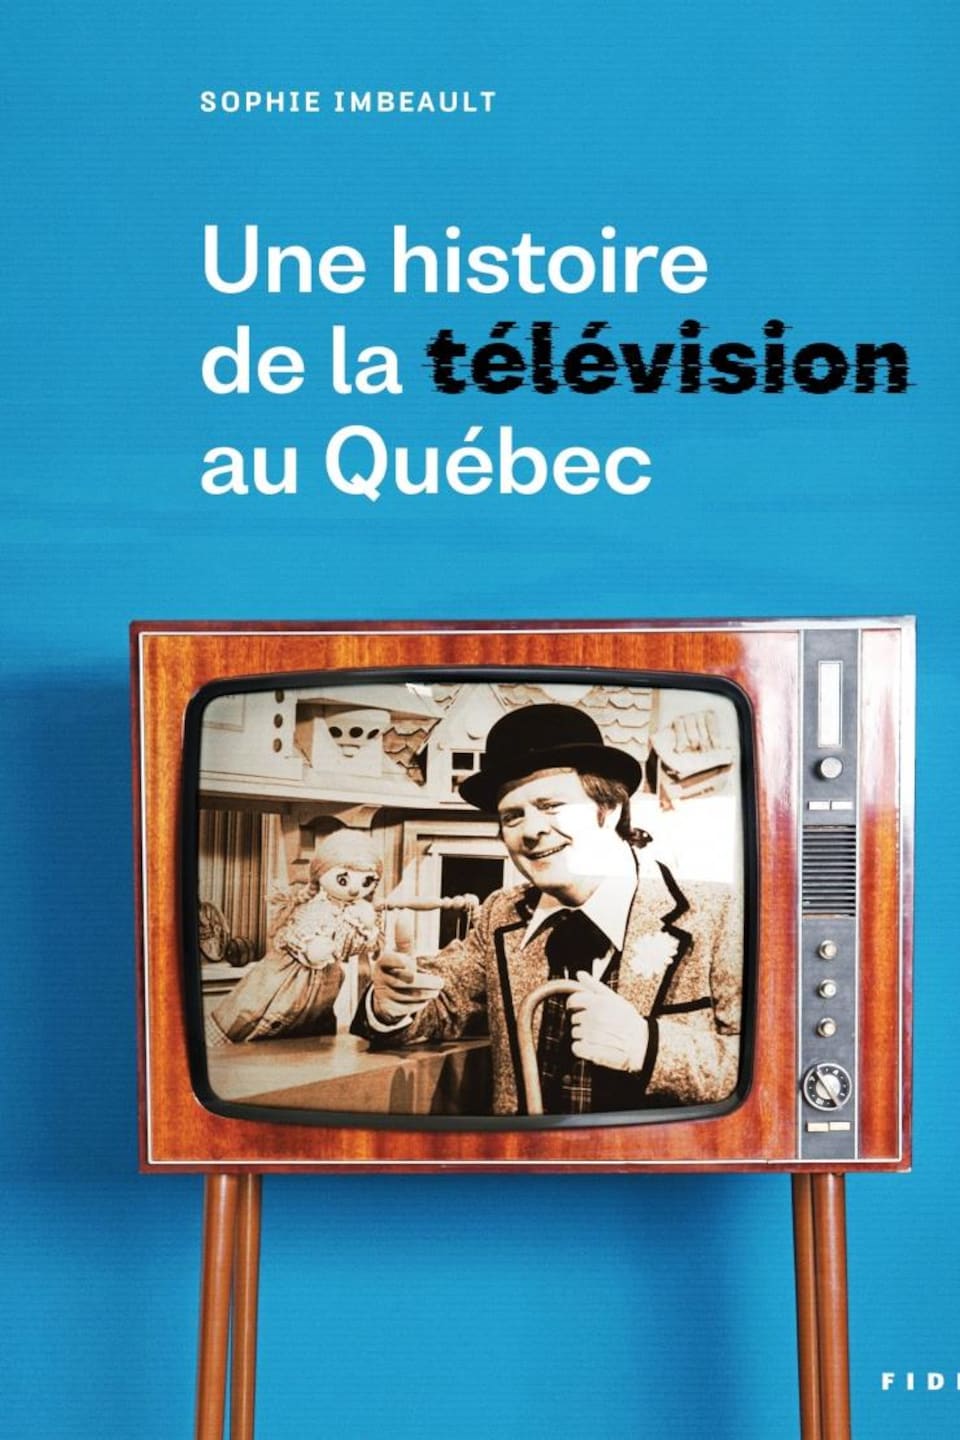 Page couverture du livre. Un vieux téléviseur montre un homme avec un chapeau melon (Bobino) parlant à une marionnette.